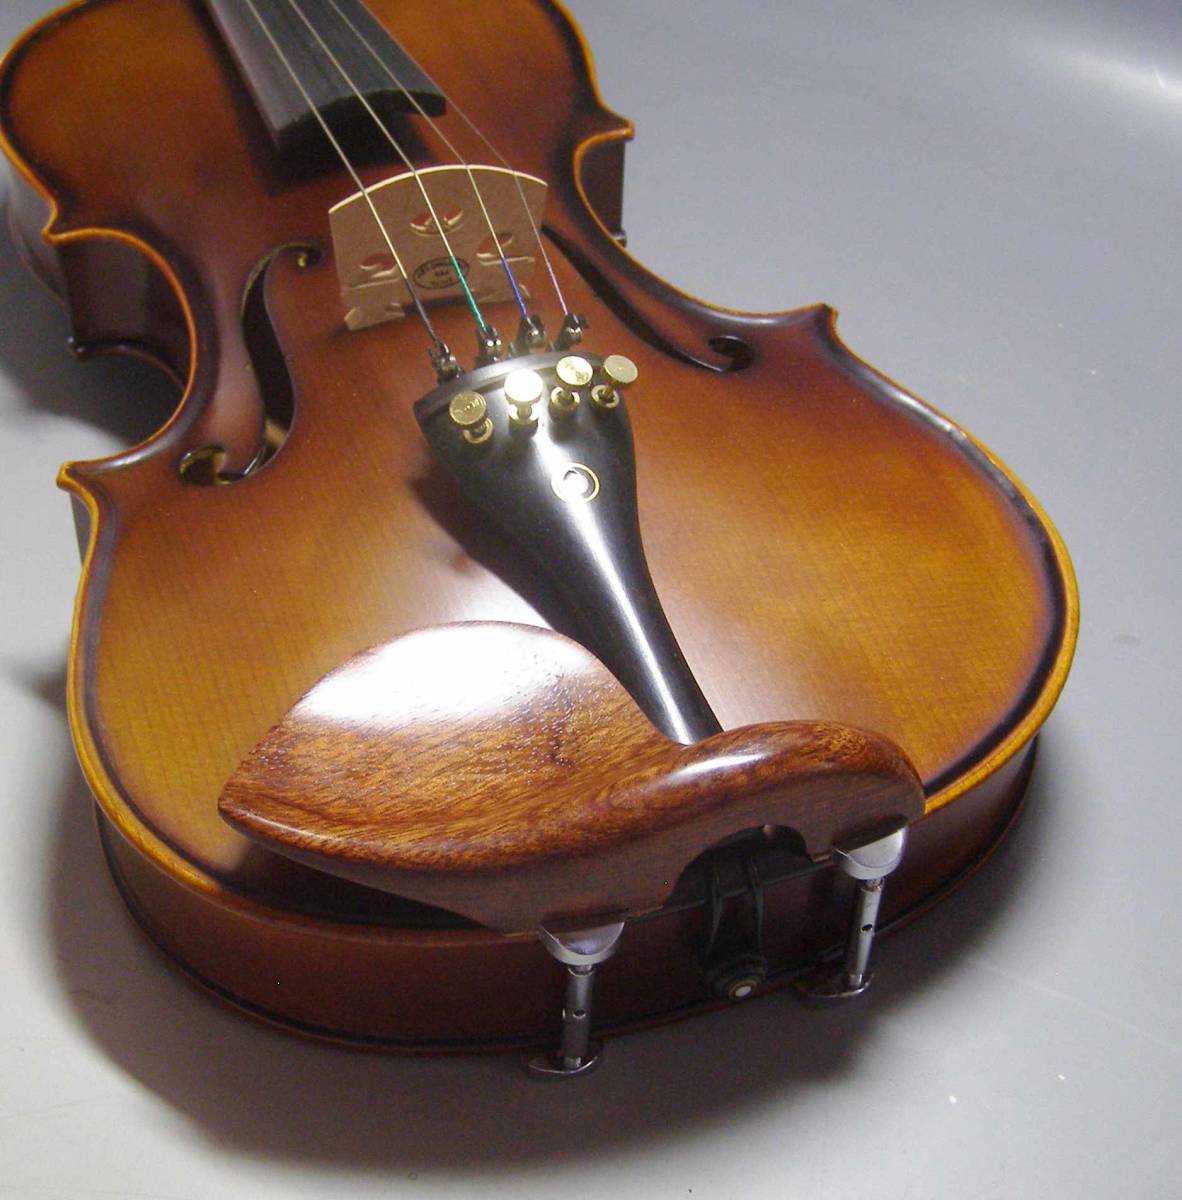 バイオリン 顎当てシタンローズ スドラド型 www.esnmurcia.org